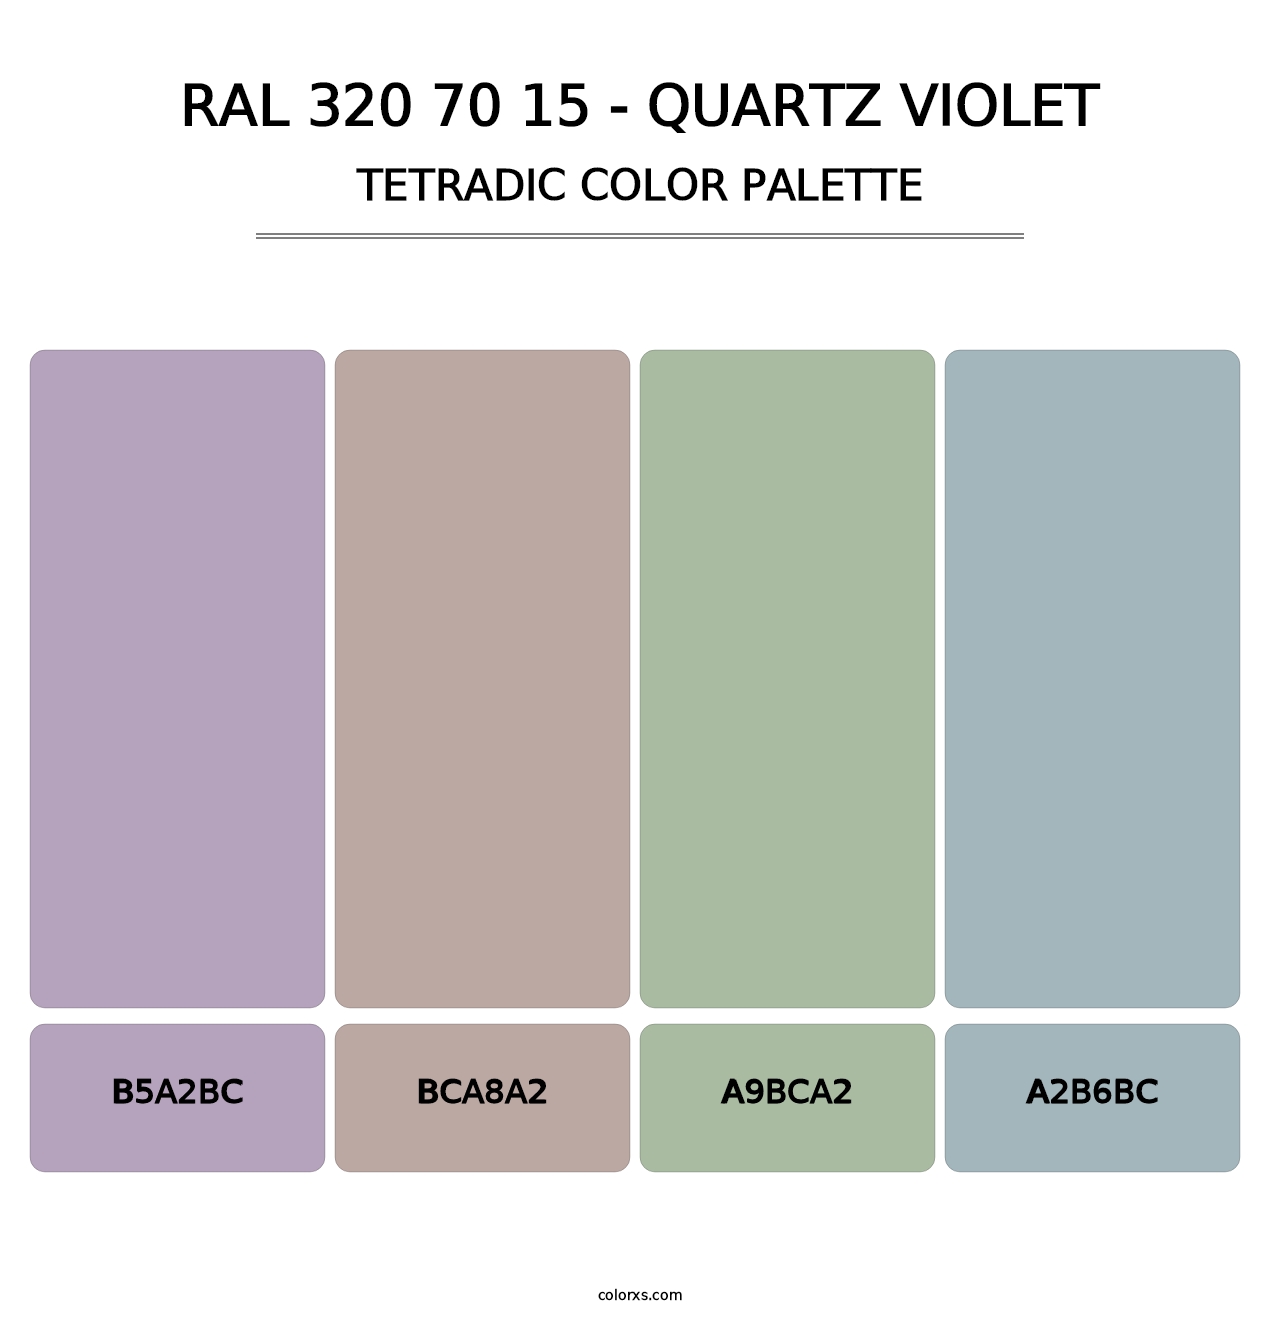 RAL 320 70 15 - Quartz Violet - Tetradic Color Palette